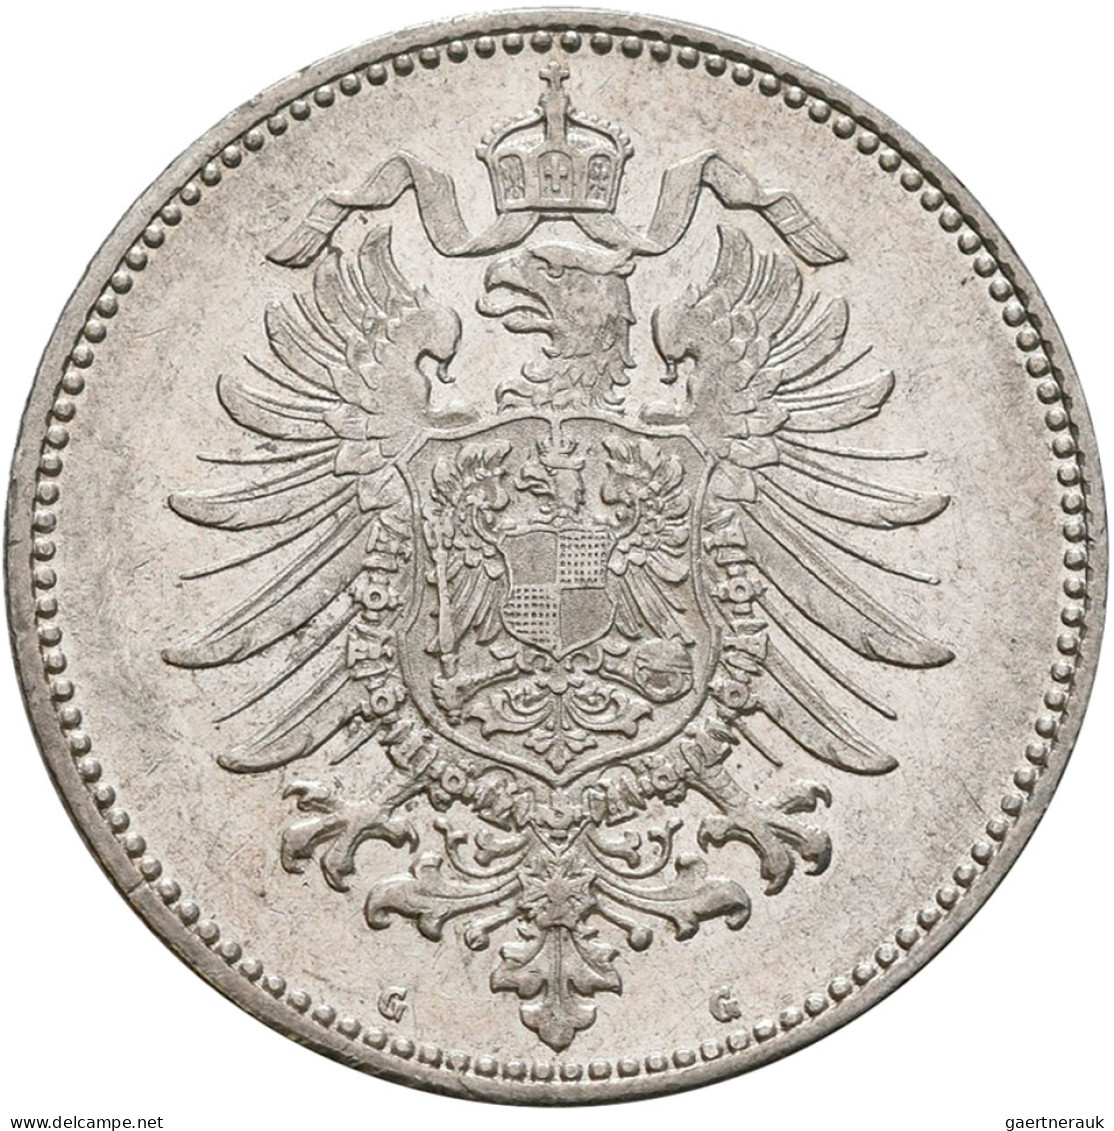 Umlaufmünzen 1 Pf. - 1 Mark: 1 Mark 1882 G, Jaeger 9. Besserer Jahrgang, Gute Er - Taler En Doppeltaler